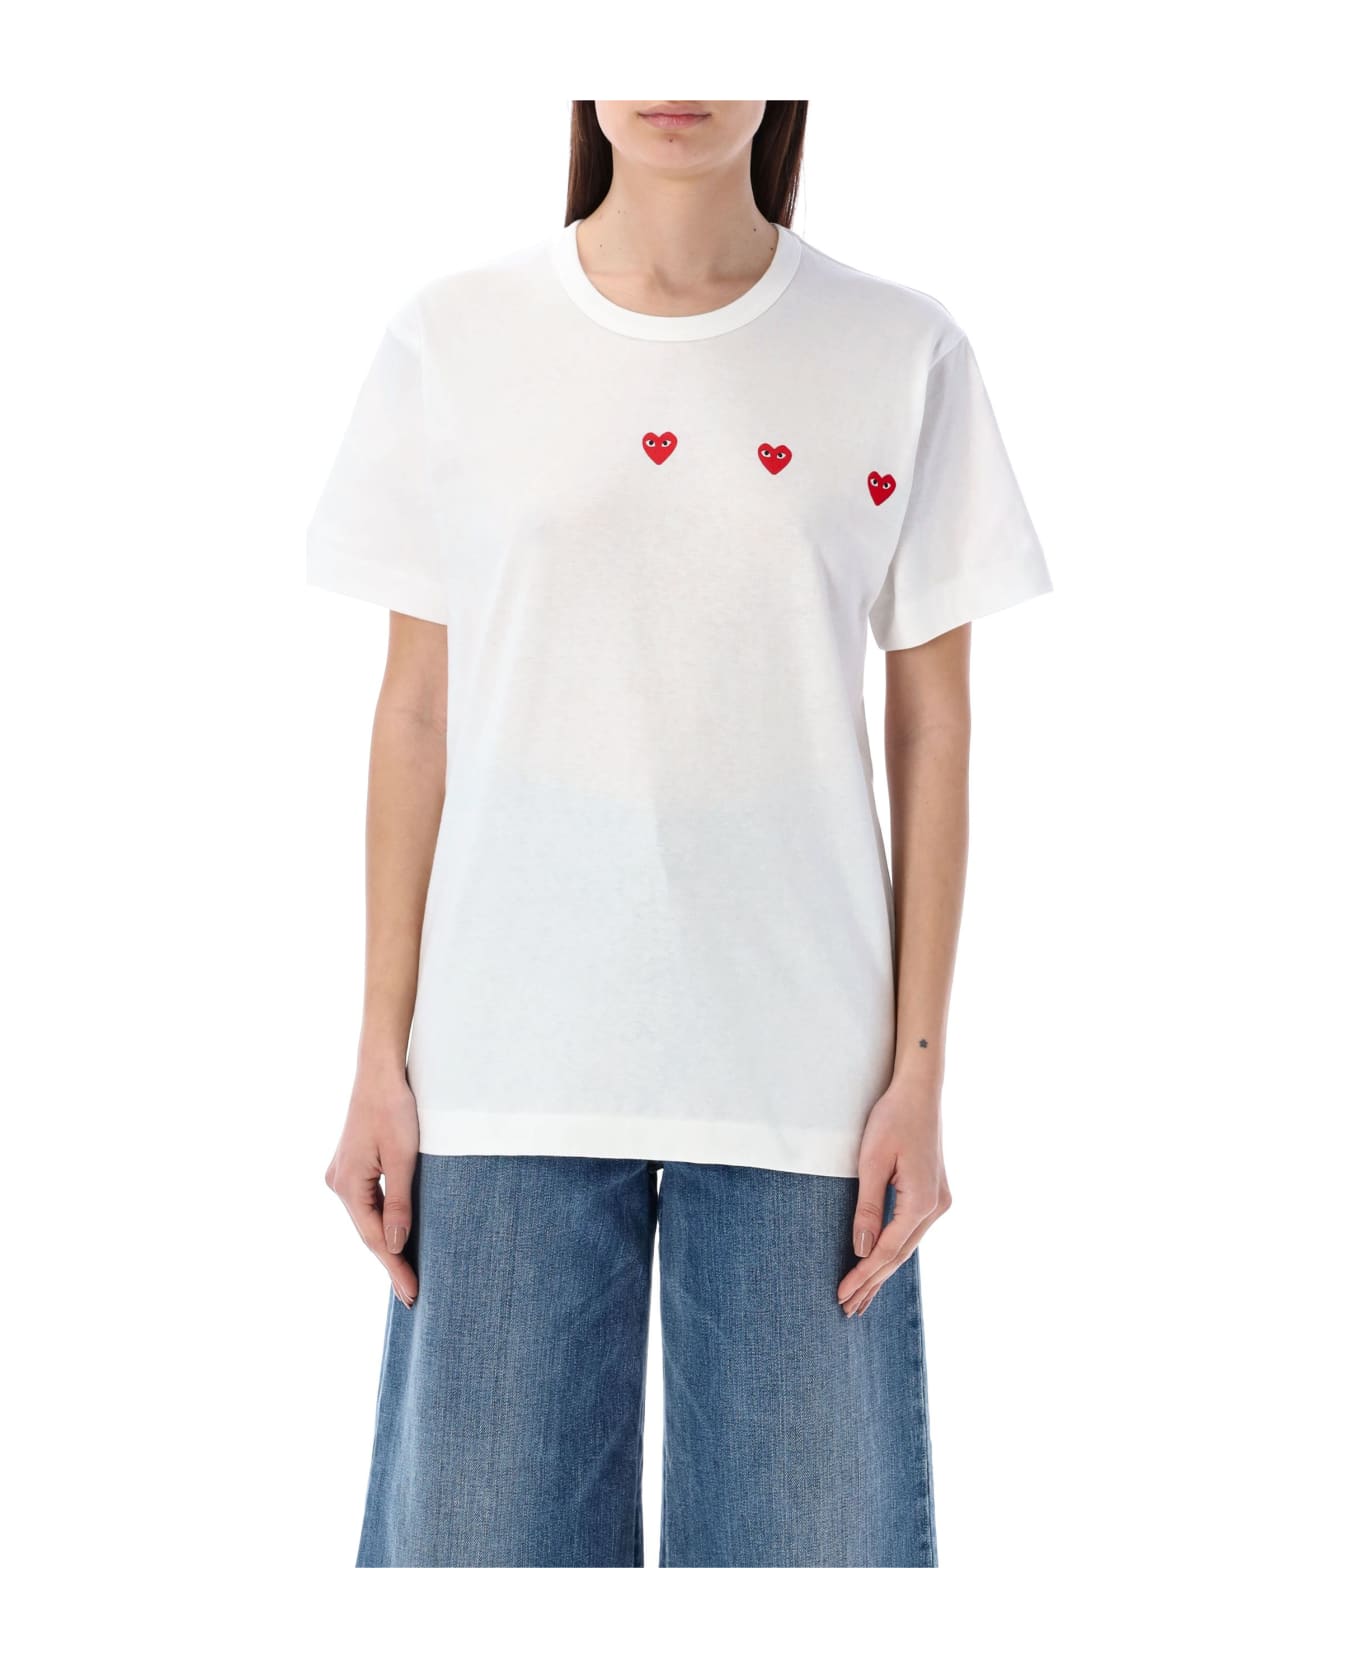 Comme des Garçons Play Hearts T-shirt - WHITE Tシャツ